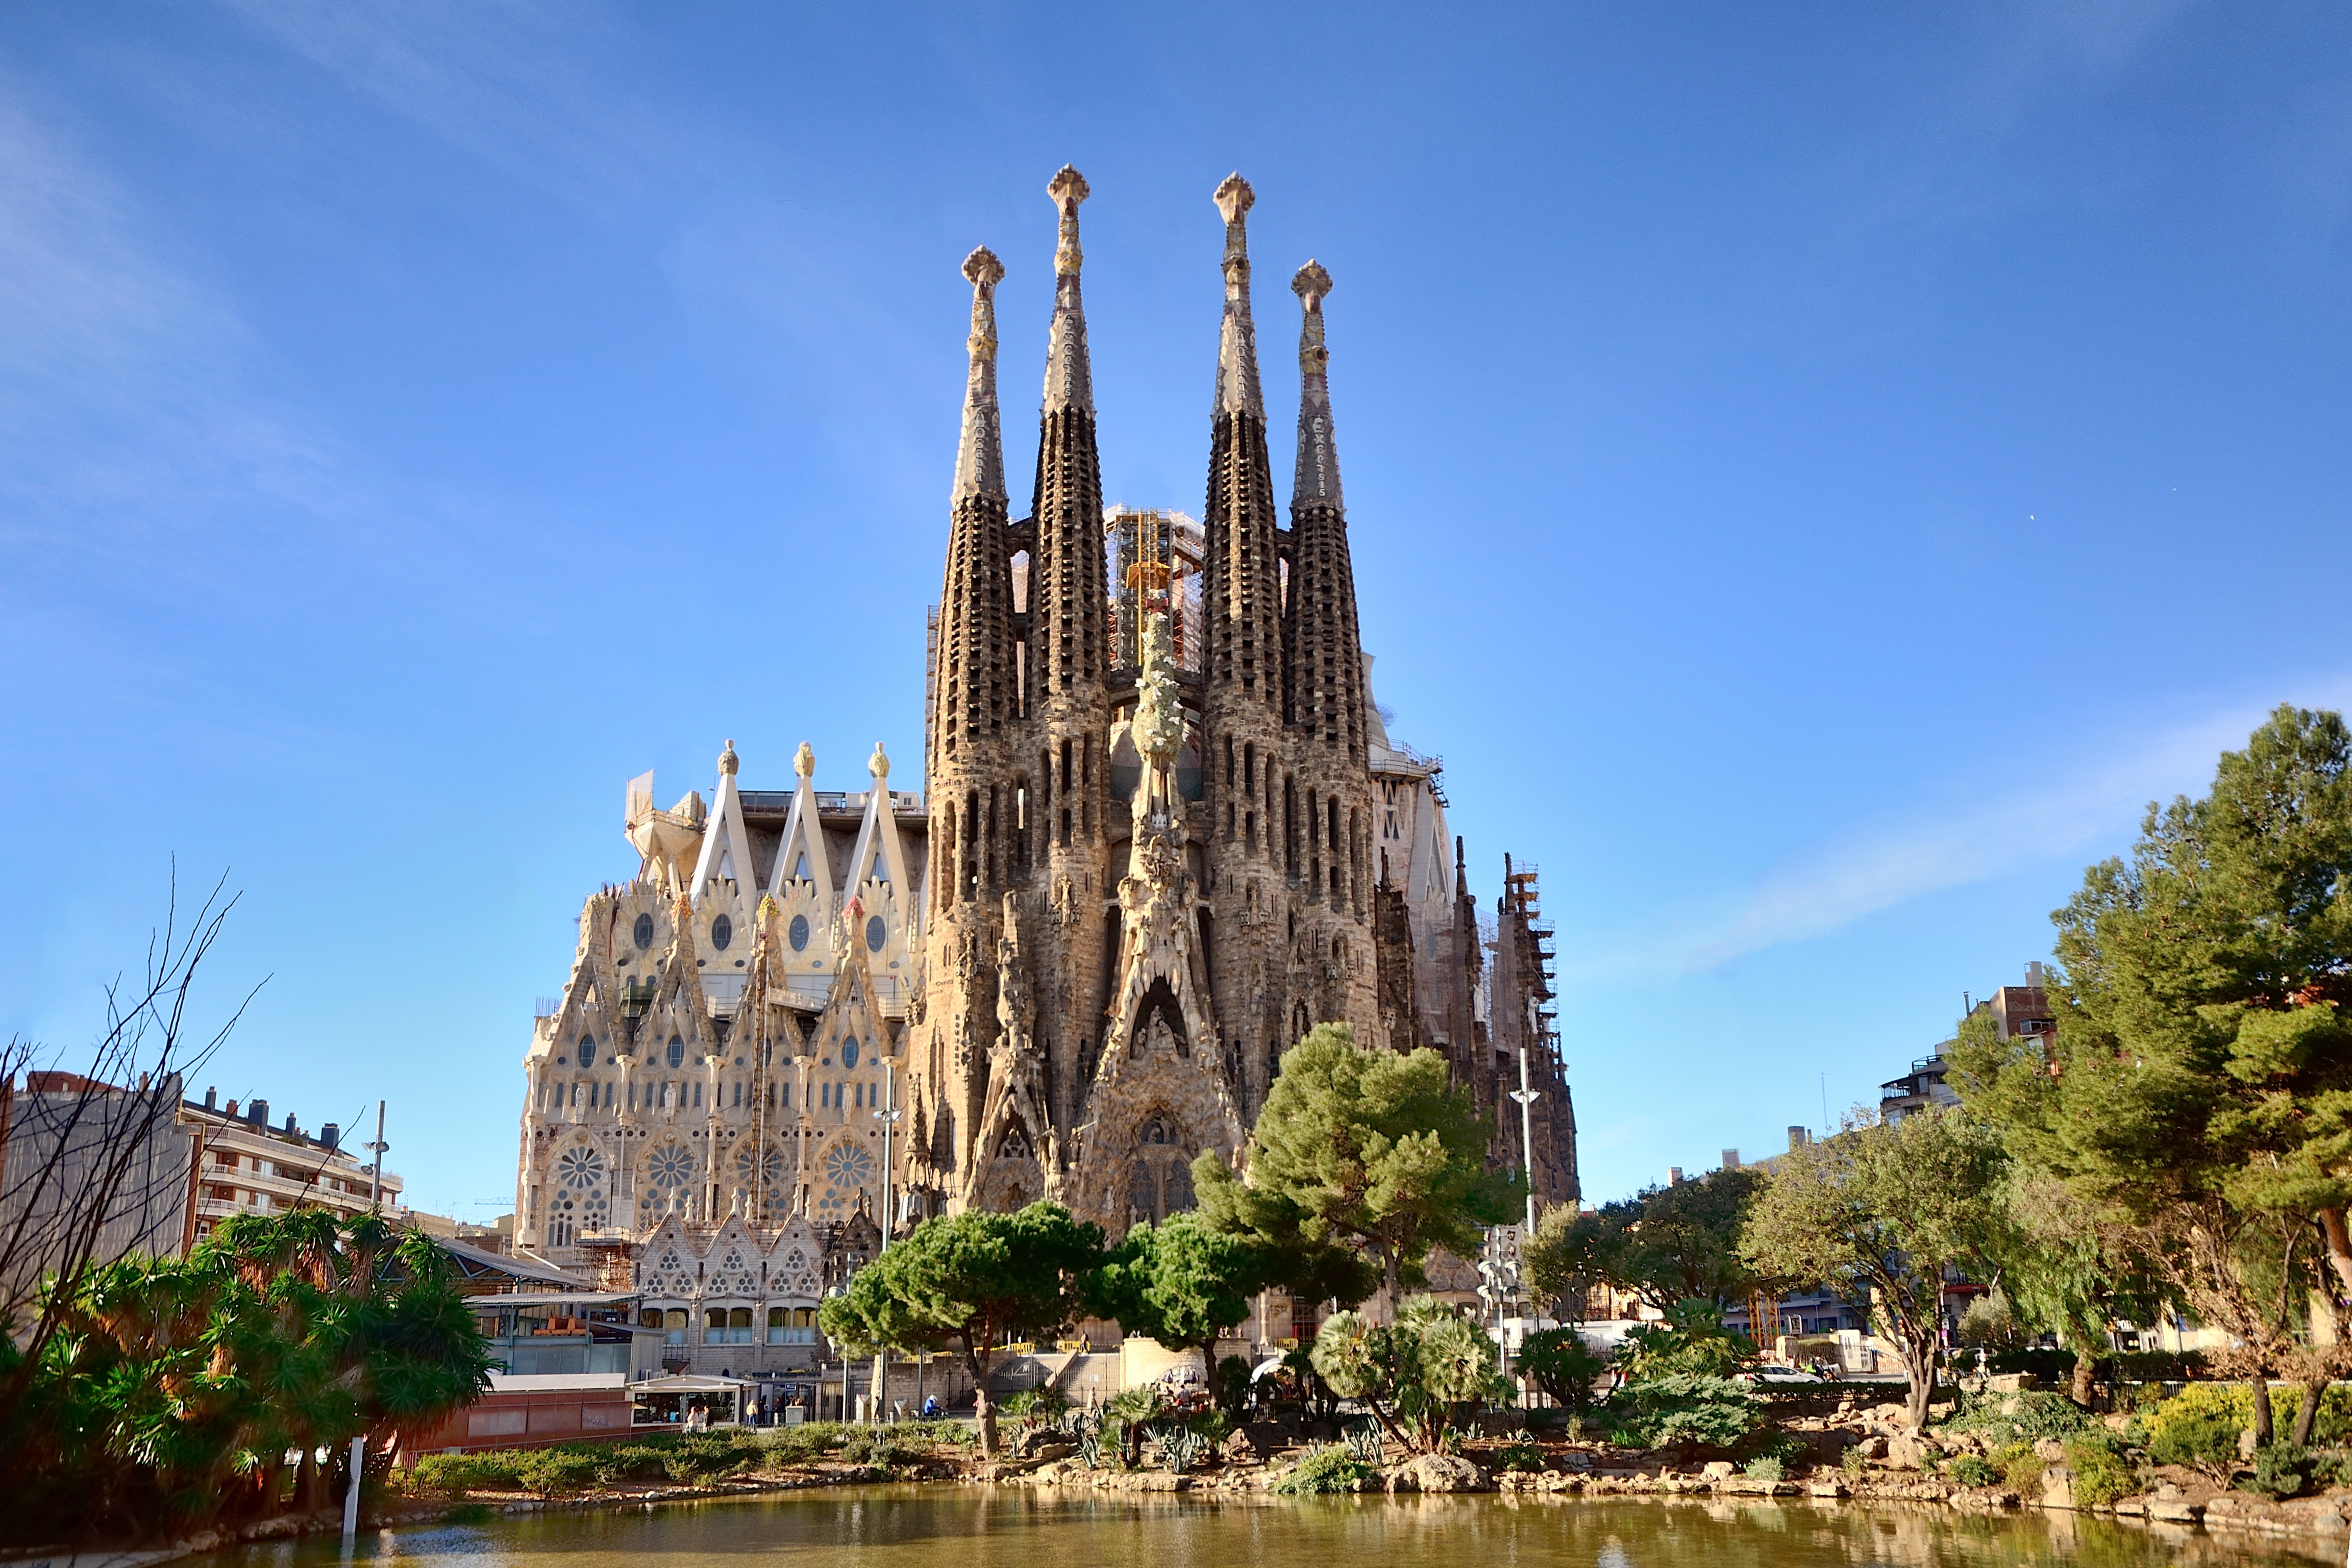 Достопримечательность какой страны является. Испания храм Святого семейства. Испания достопримечательности Саграда фамилия.